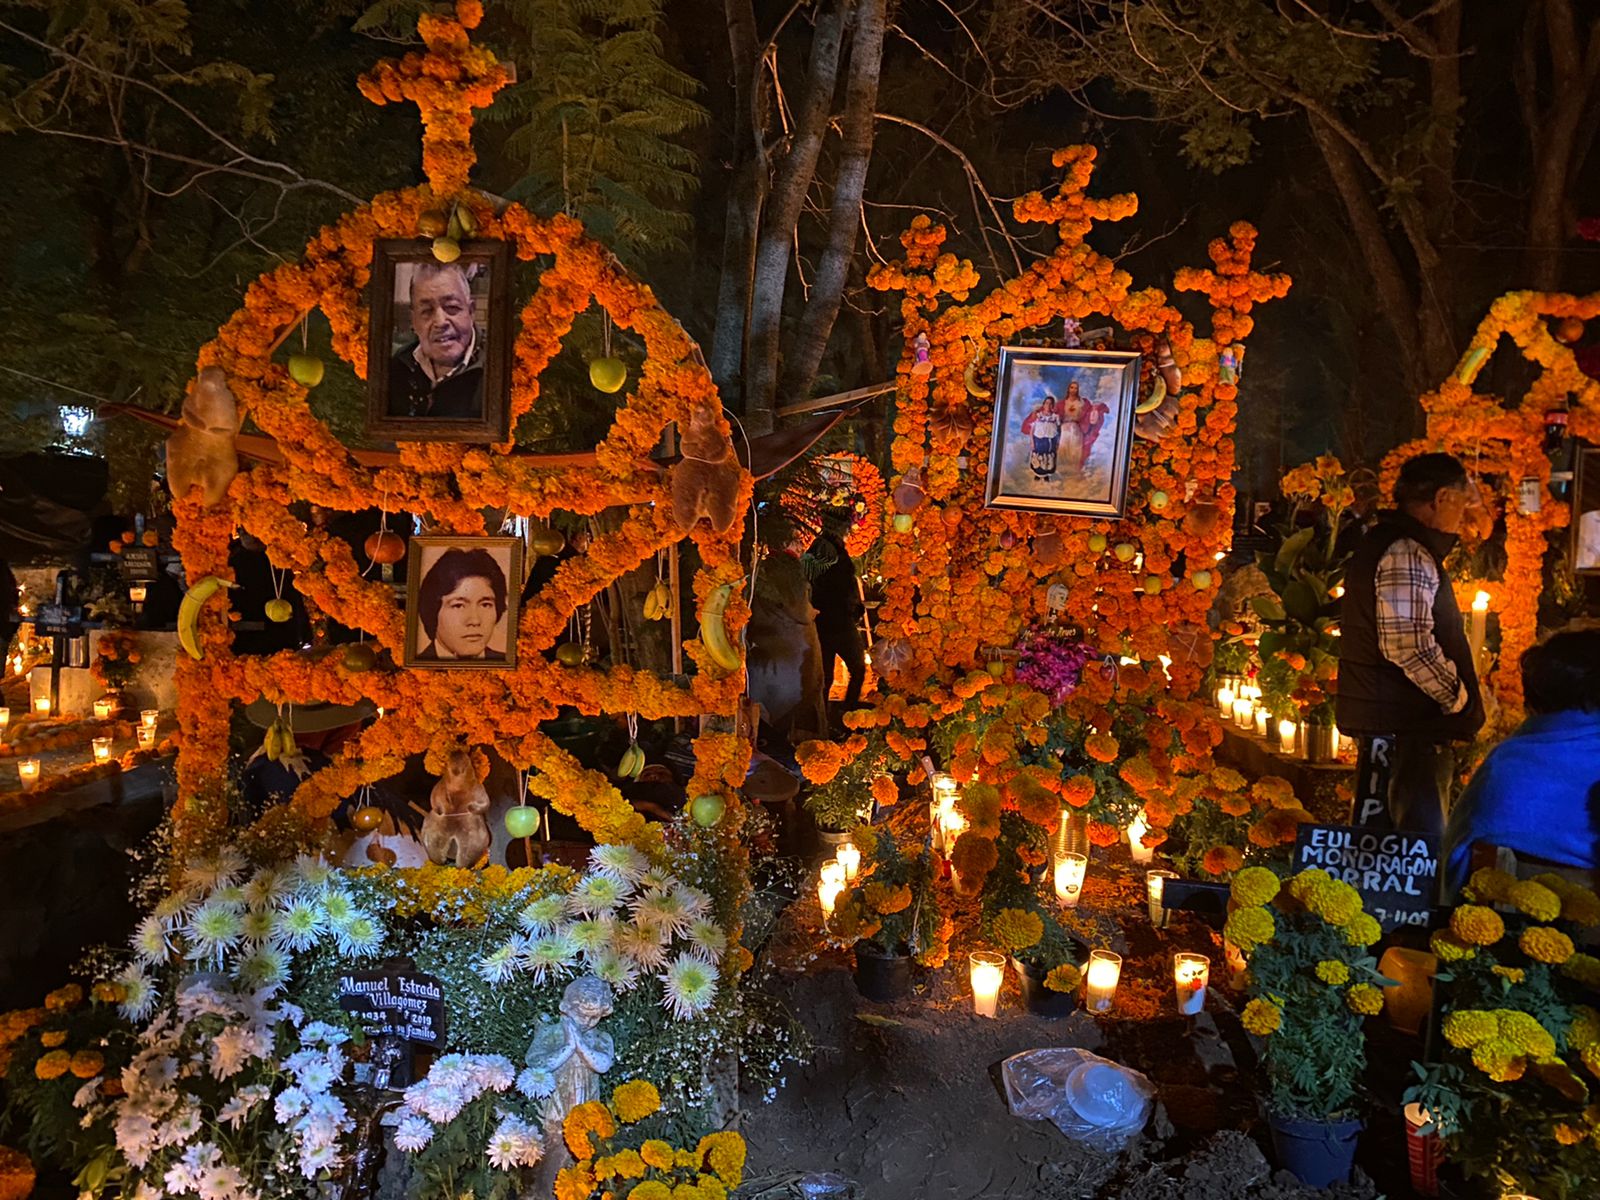 Intacta tradición y misticismo de la Noche de Ánimas en Michoacán